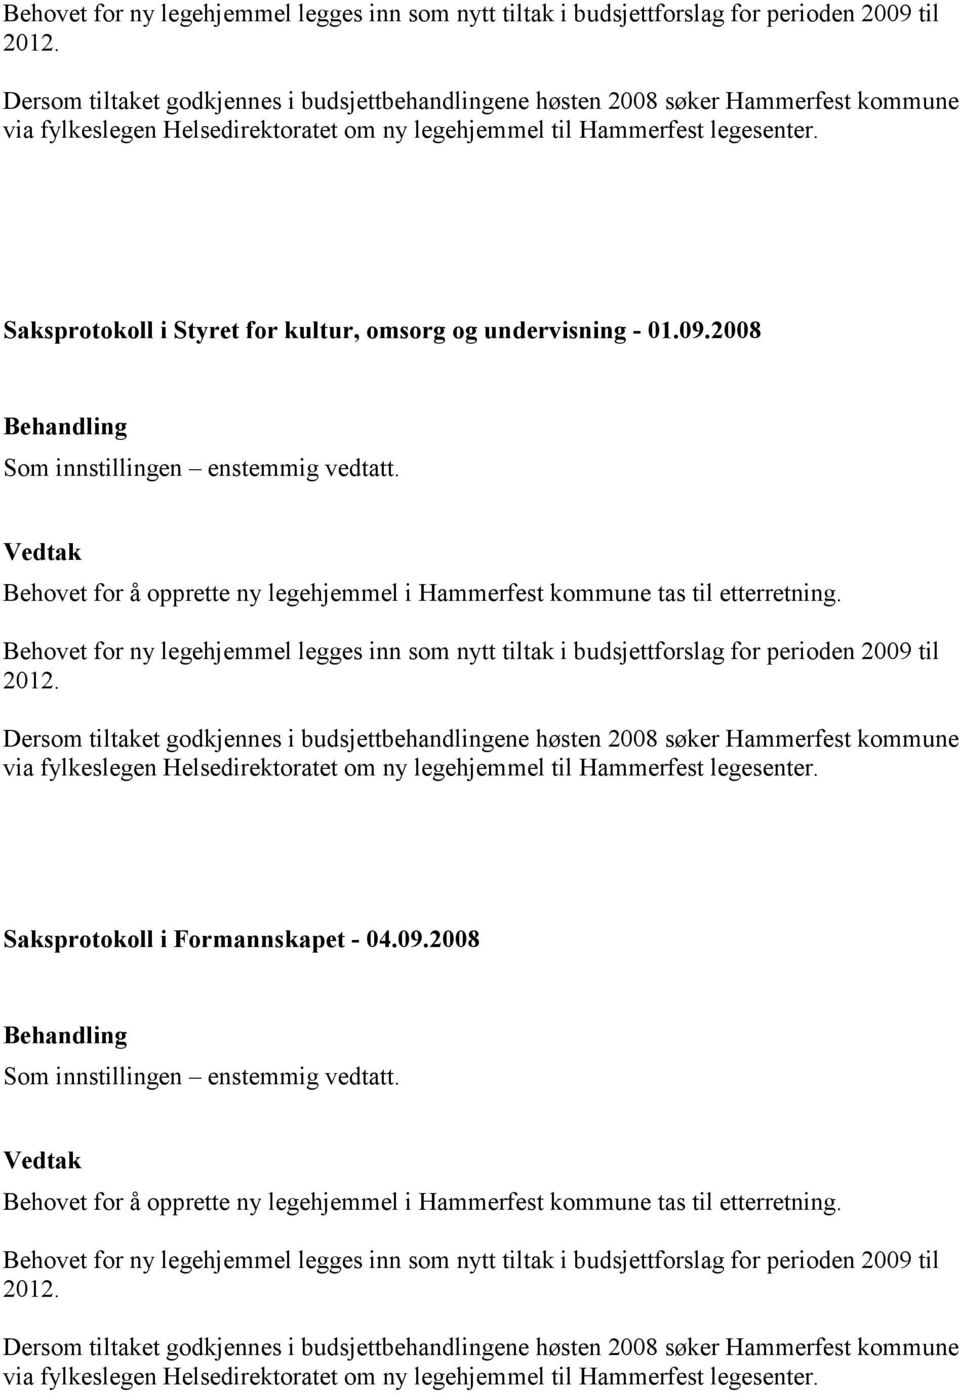 Saksprotokoll i Styret for kultur, omsorg og undervisning - 01.09.2008 Som innstillingen enstemmig vedtatt. Behovet for å opprette ny legehjemmel i Hammerfest kommune tas til etterretning.